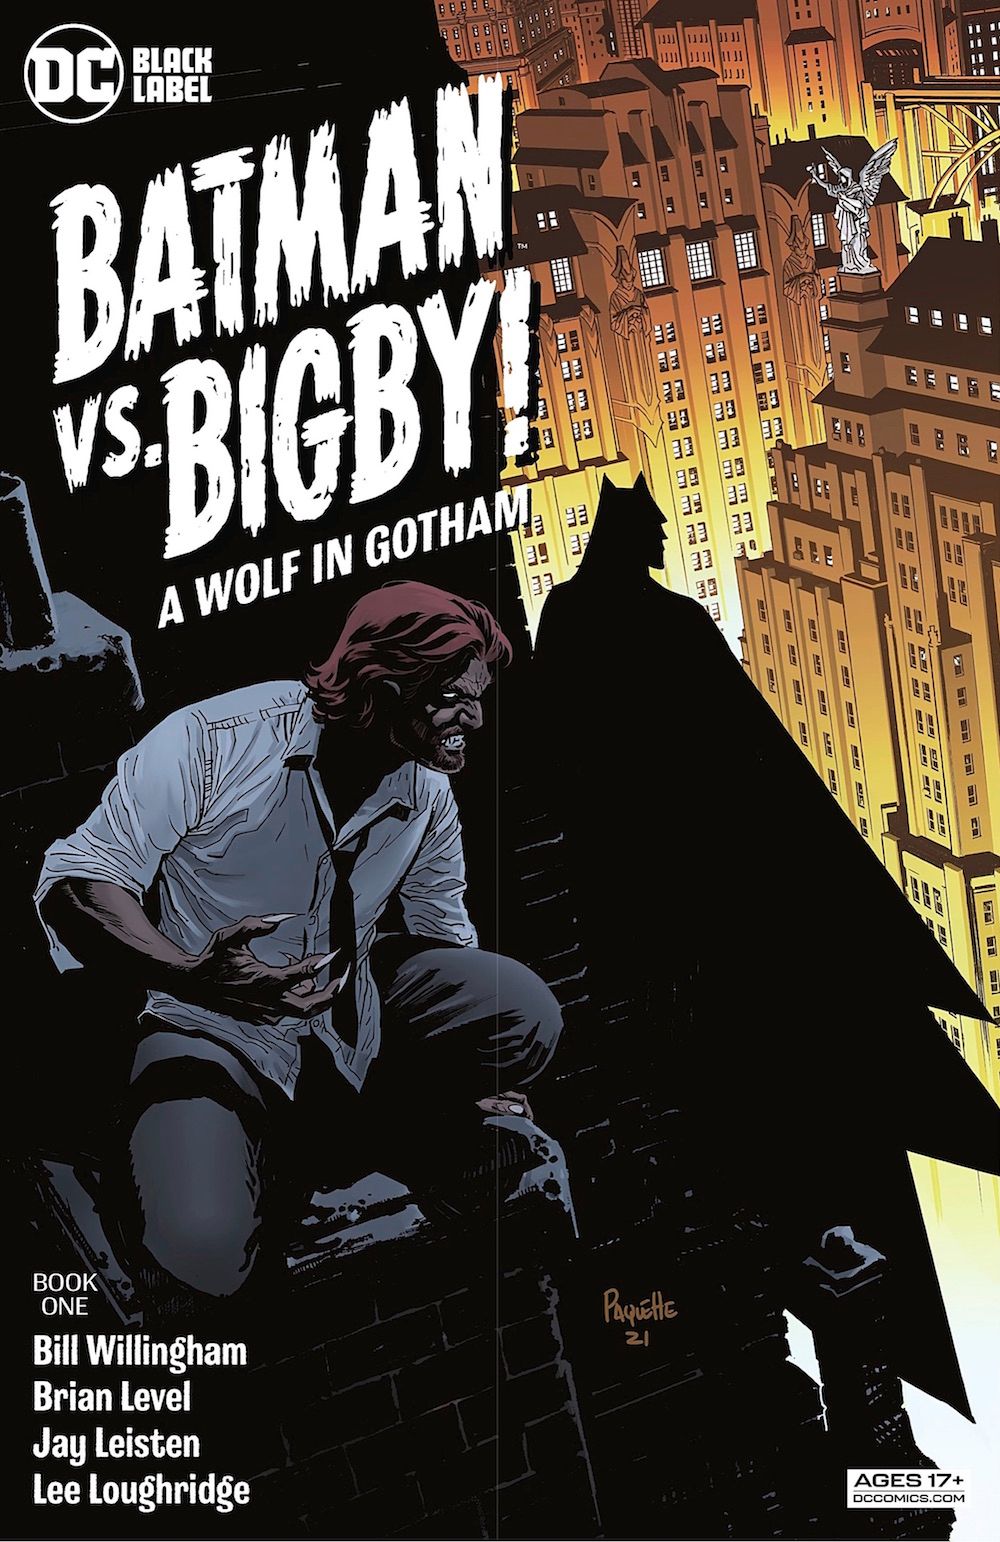 Hermoso Batman vs Bigby: Un lobo en Gotham #1 se vuelve un poco demasiado sombrío